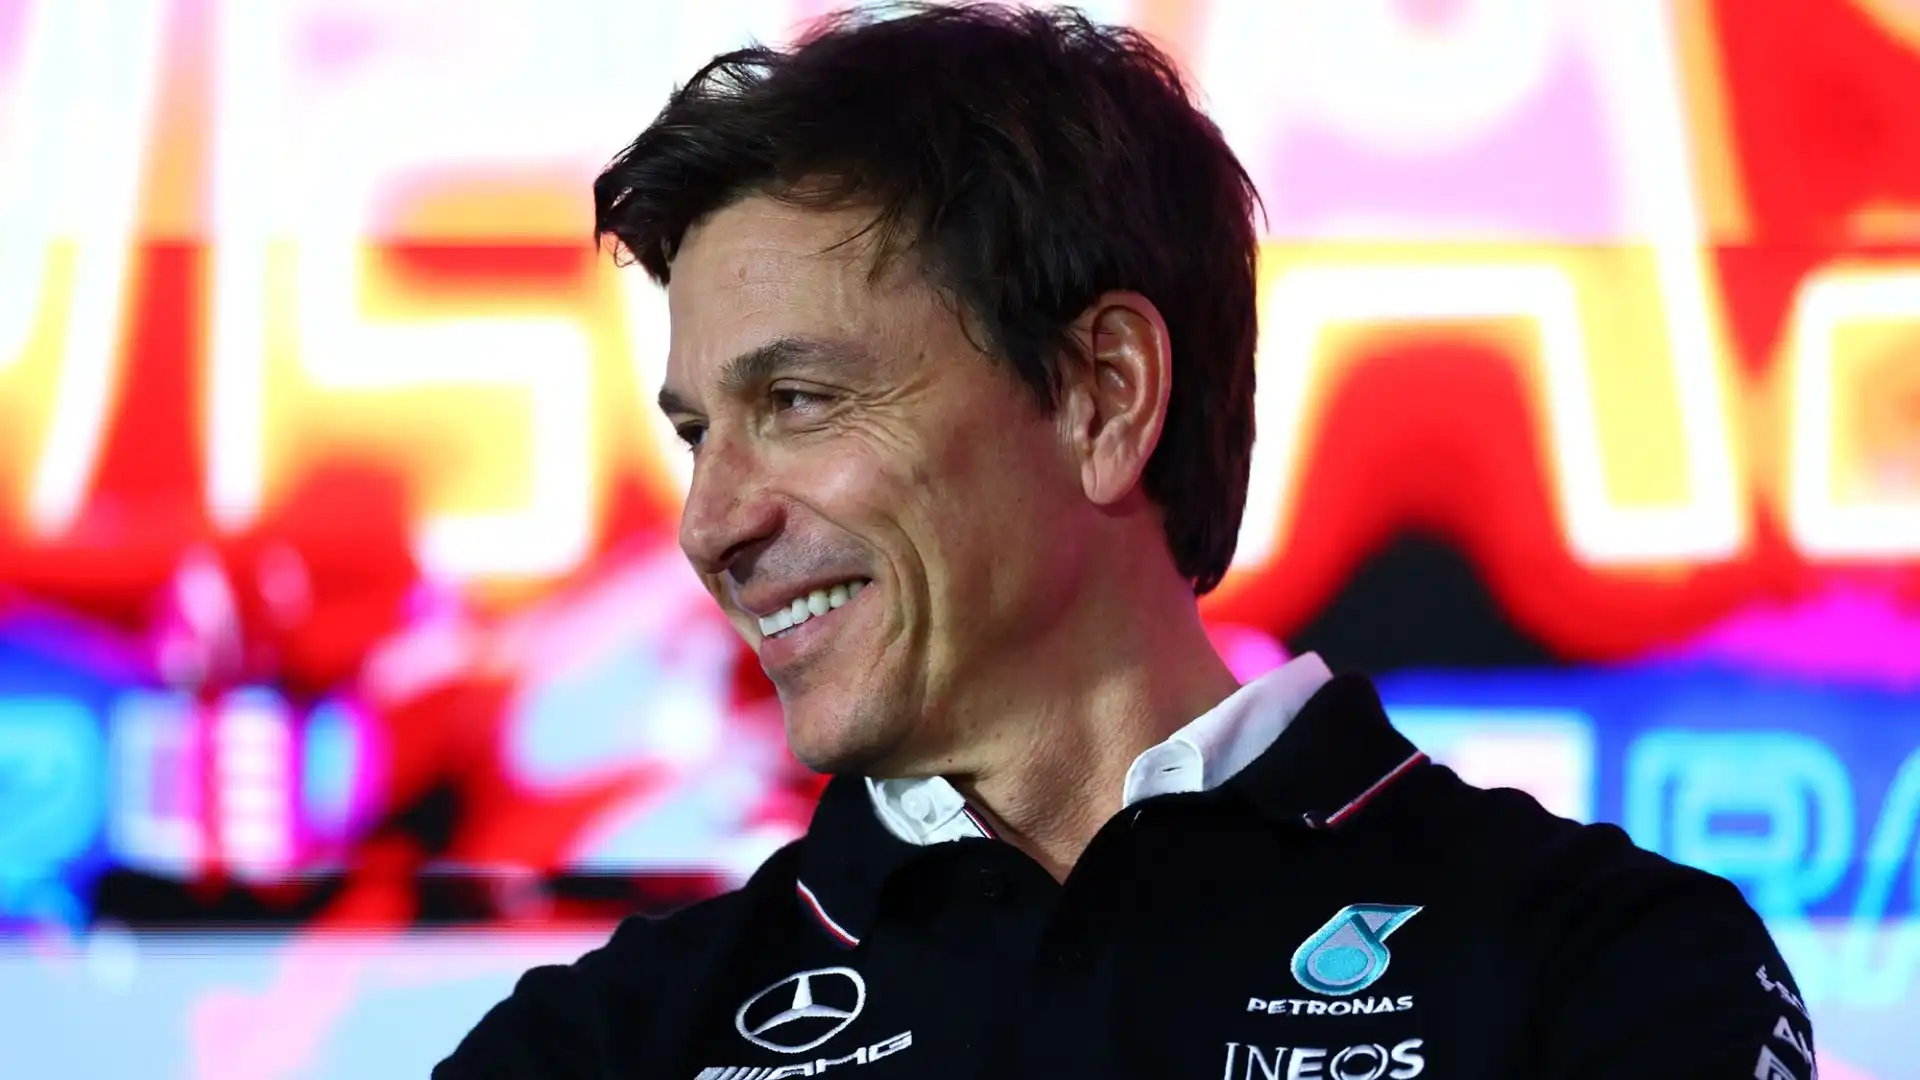 "Abbiamo visto come la McLaren abbia fatto enormi progressi con un solo aggiornamento nella scorsa stagione"